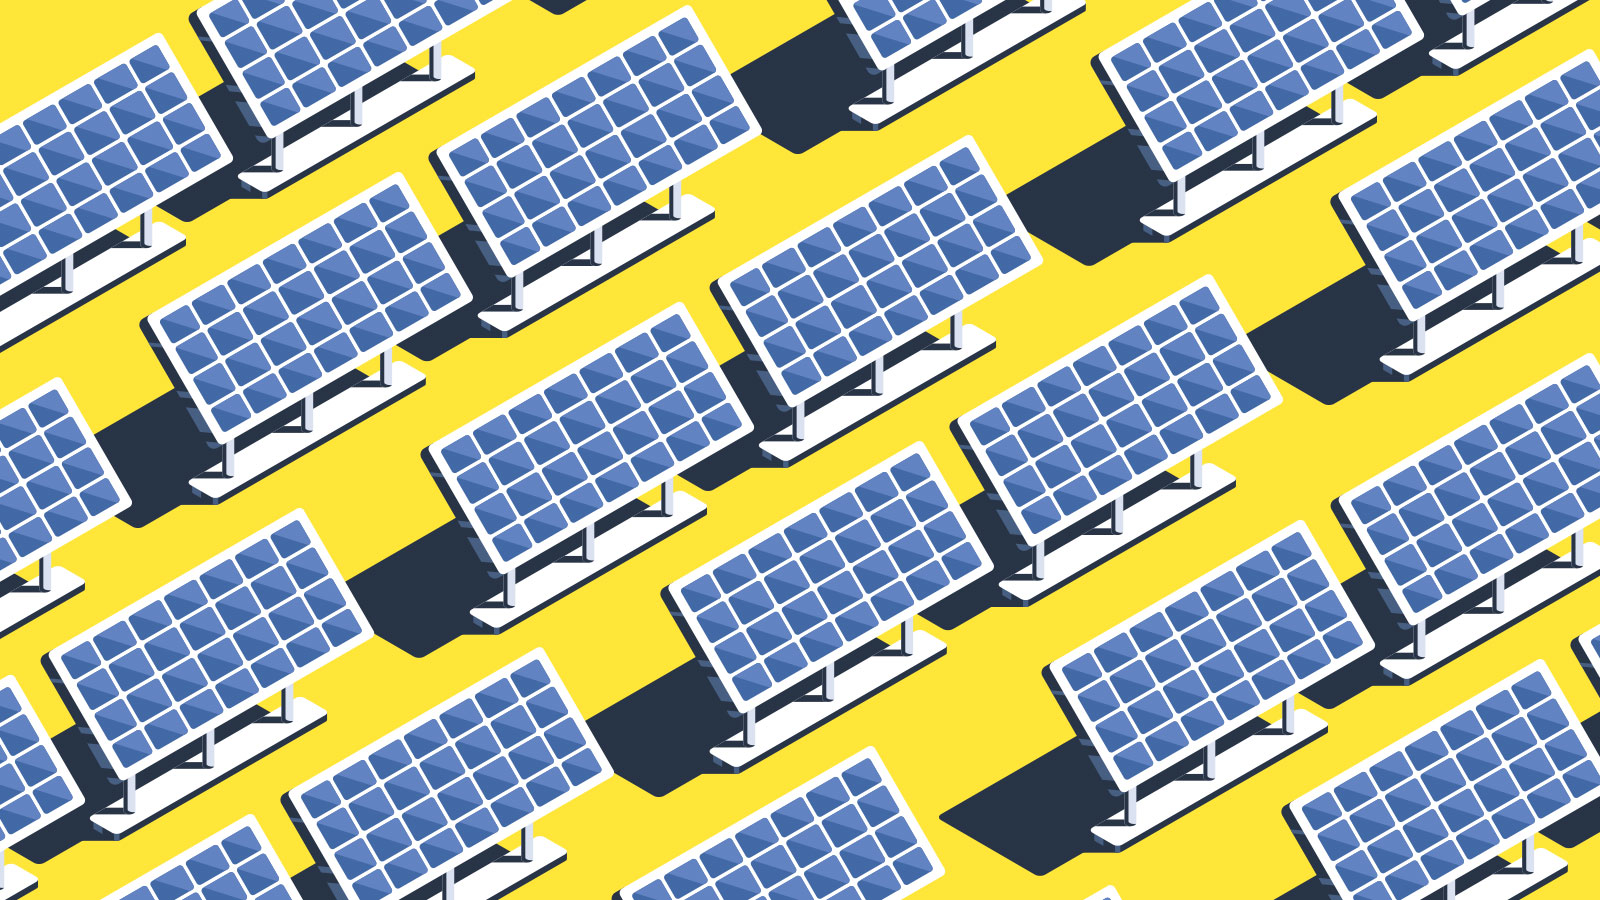 Solar panels in a grid pattern